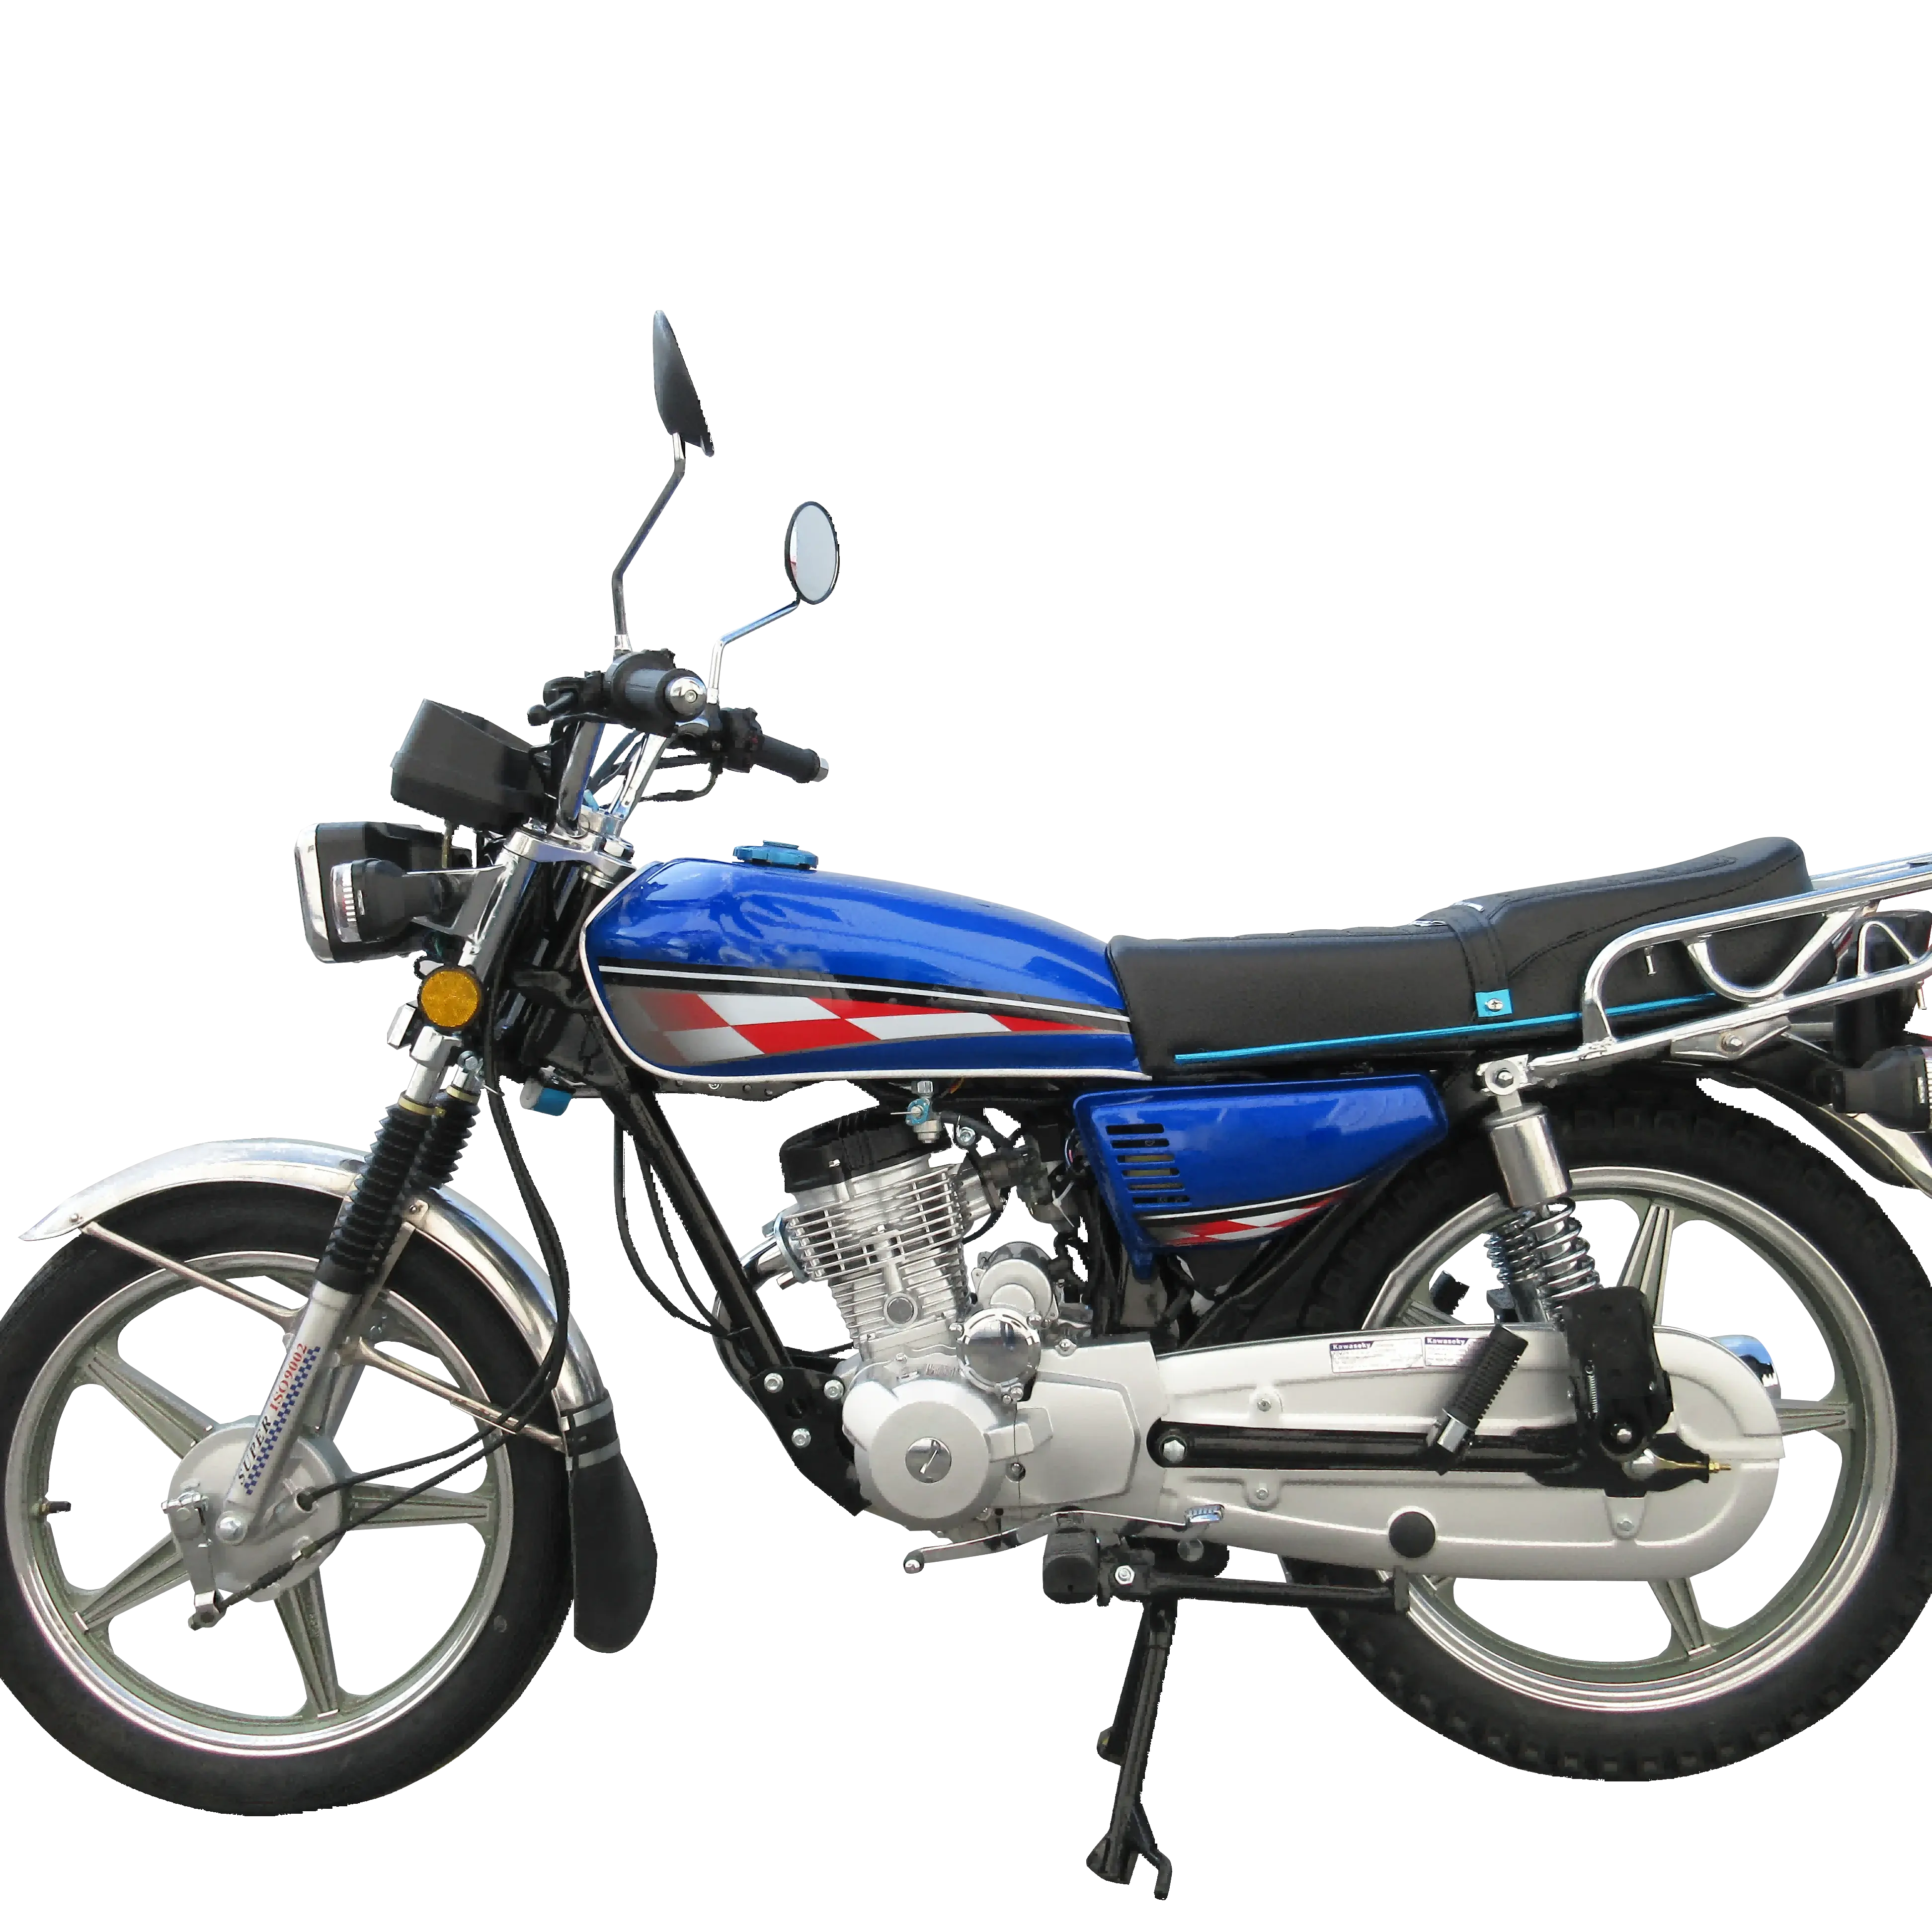 Vente chaude CG125 CG150 125cc 150cc rue moto aluminium jante roue bas prix moto de haute qualité